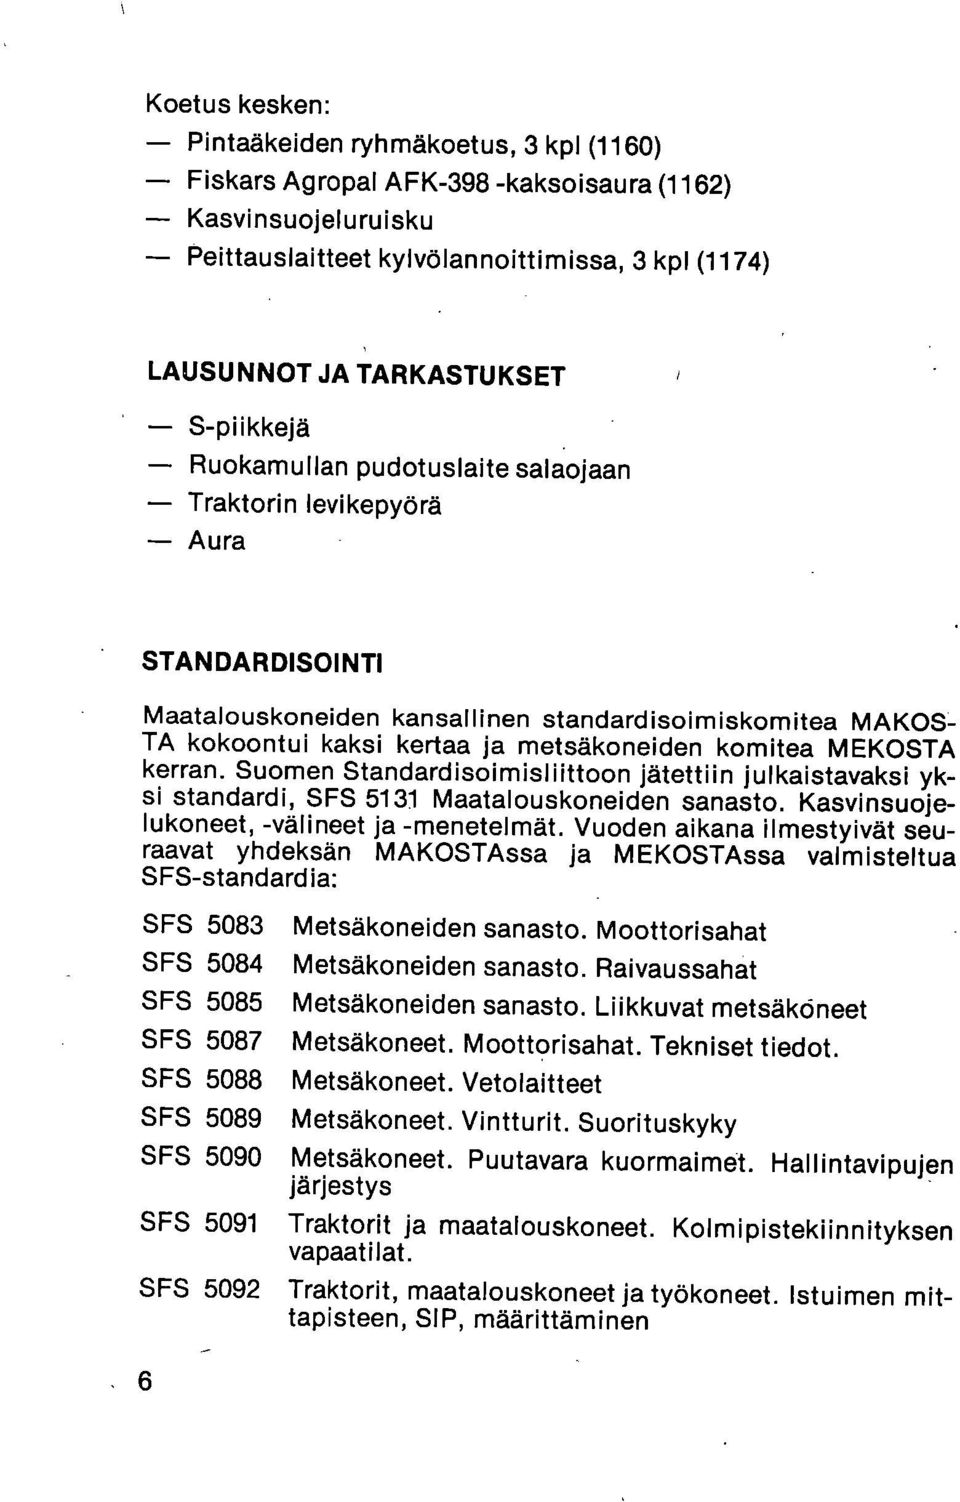 MEKOSTA kerran. Suomen Standardisoimisliittoon jätettiin julkaistavaksi yksi standardi, SFS 5131 Maatalouskoneiden sanasto. Kasvinsuojelukoneet, -välineet ja -menetelmät.